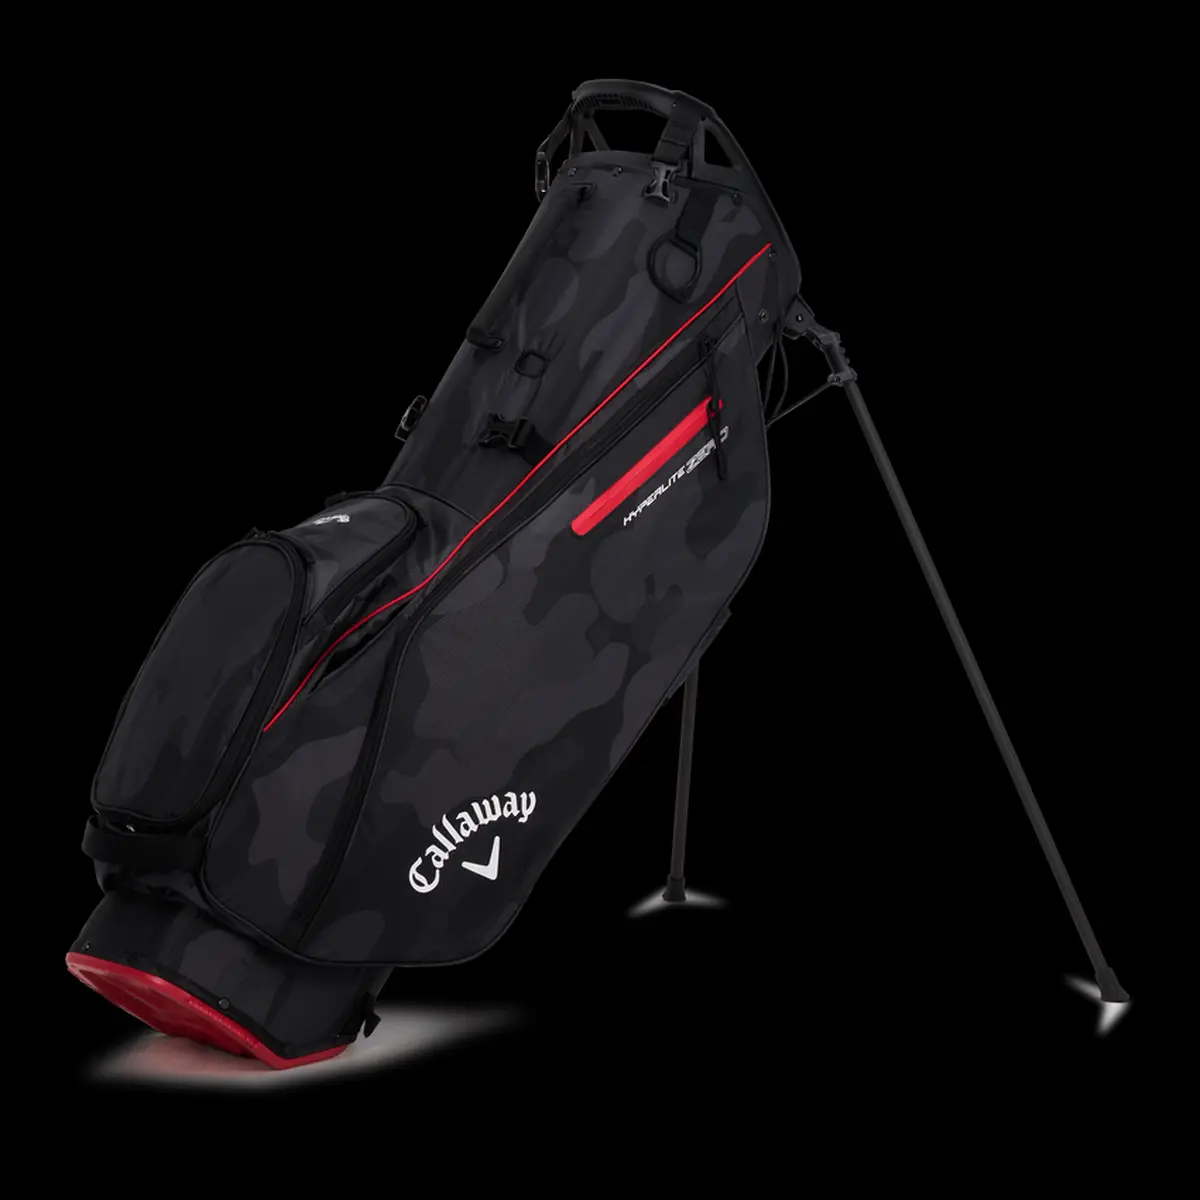 Ultra odlehčený golfový bag Hyperlite Zero Stand Bag má pogumovaný Shaft Shield pro ochranu holí a anatomické popruhy.